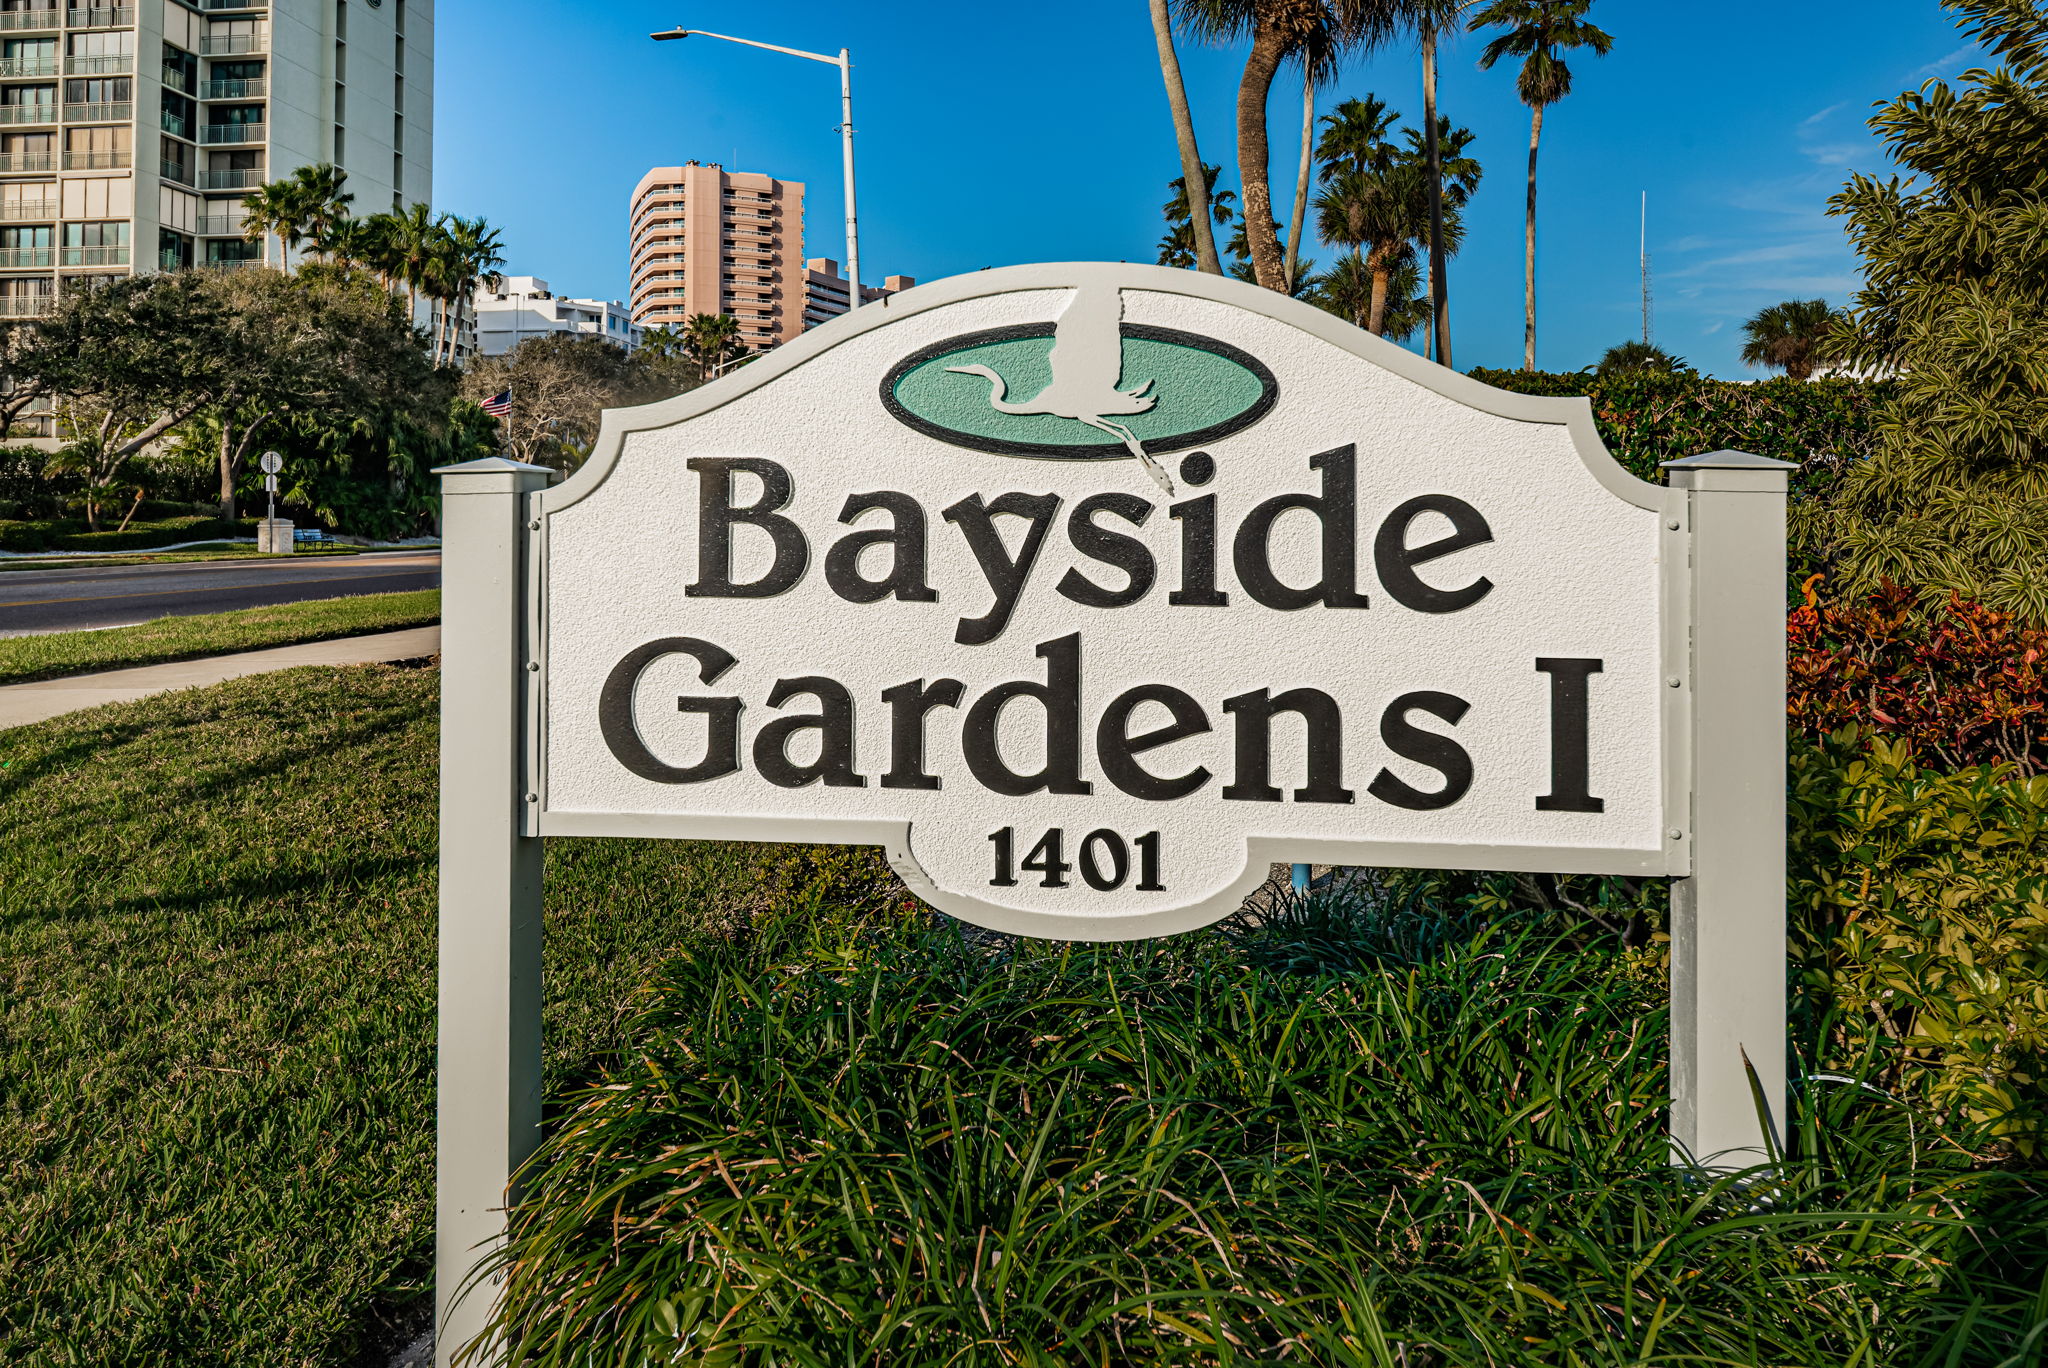 9-Bayside Gardens I